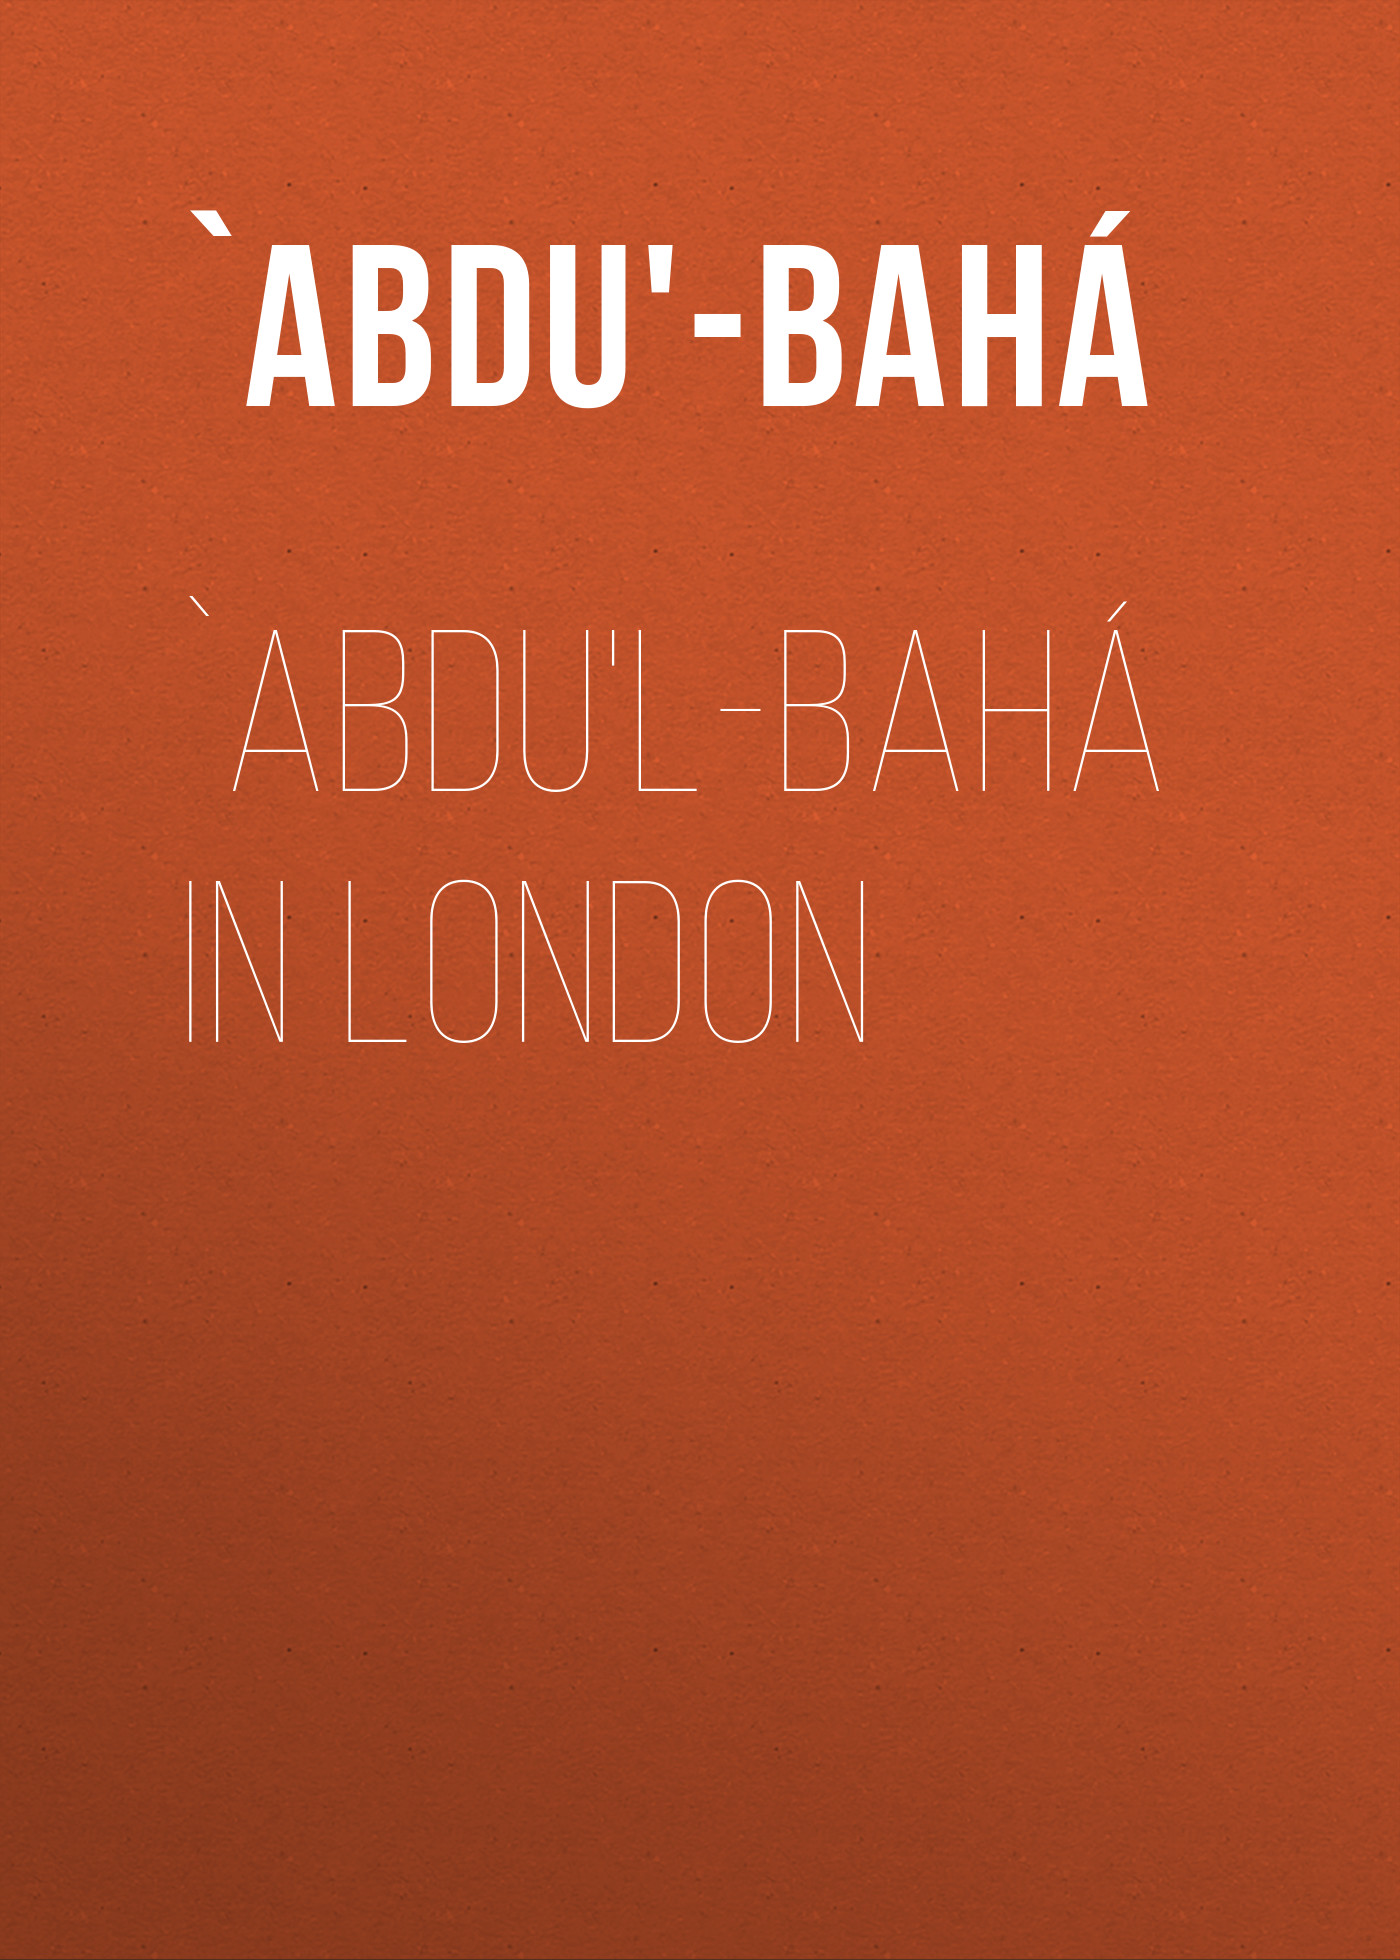 Книга `Abdu'l-Bahá in London из серии , созданная  `Abdu'-Bahá, может относится к жанру Зарубежная классика, Зарубежная эзотерическая и религиозная литература, Философия, Зарубежная психология. Стоимость электронной книги `Abdu'l-Bahá in London с идентификатором 36366886 составляет 0 руб.